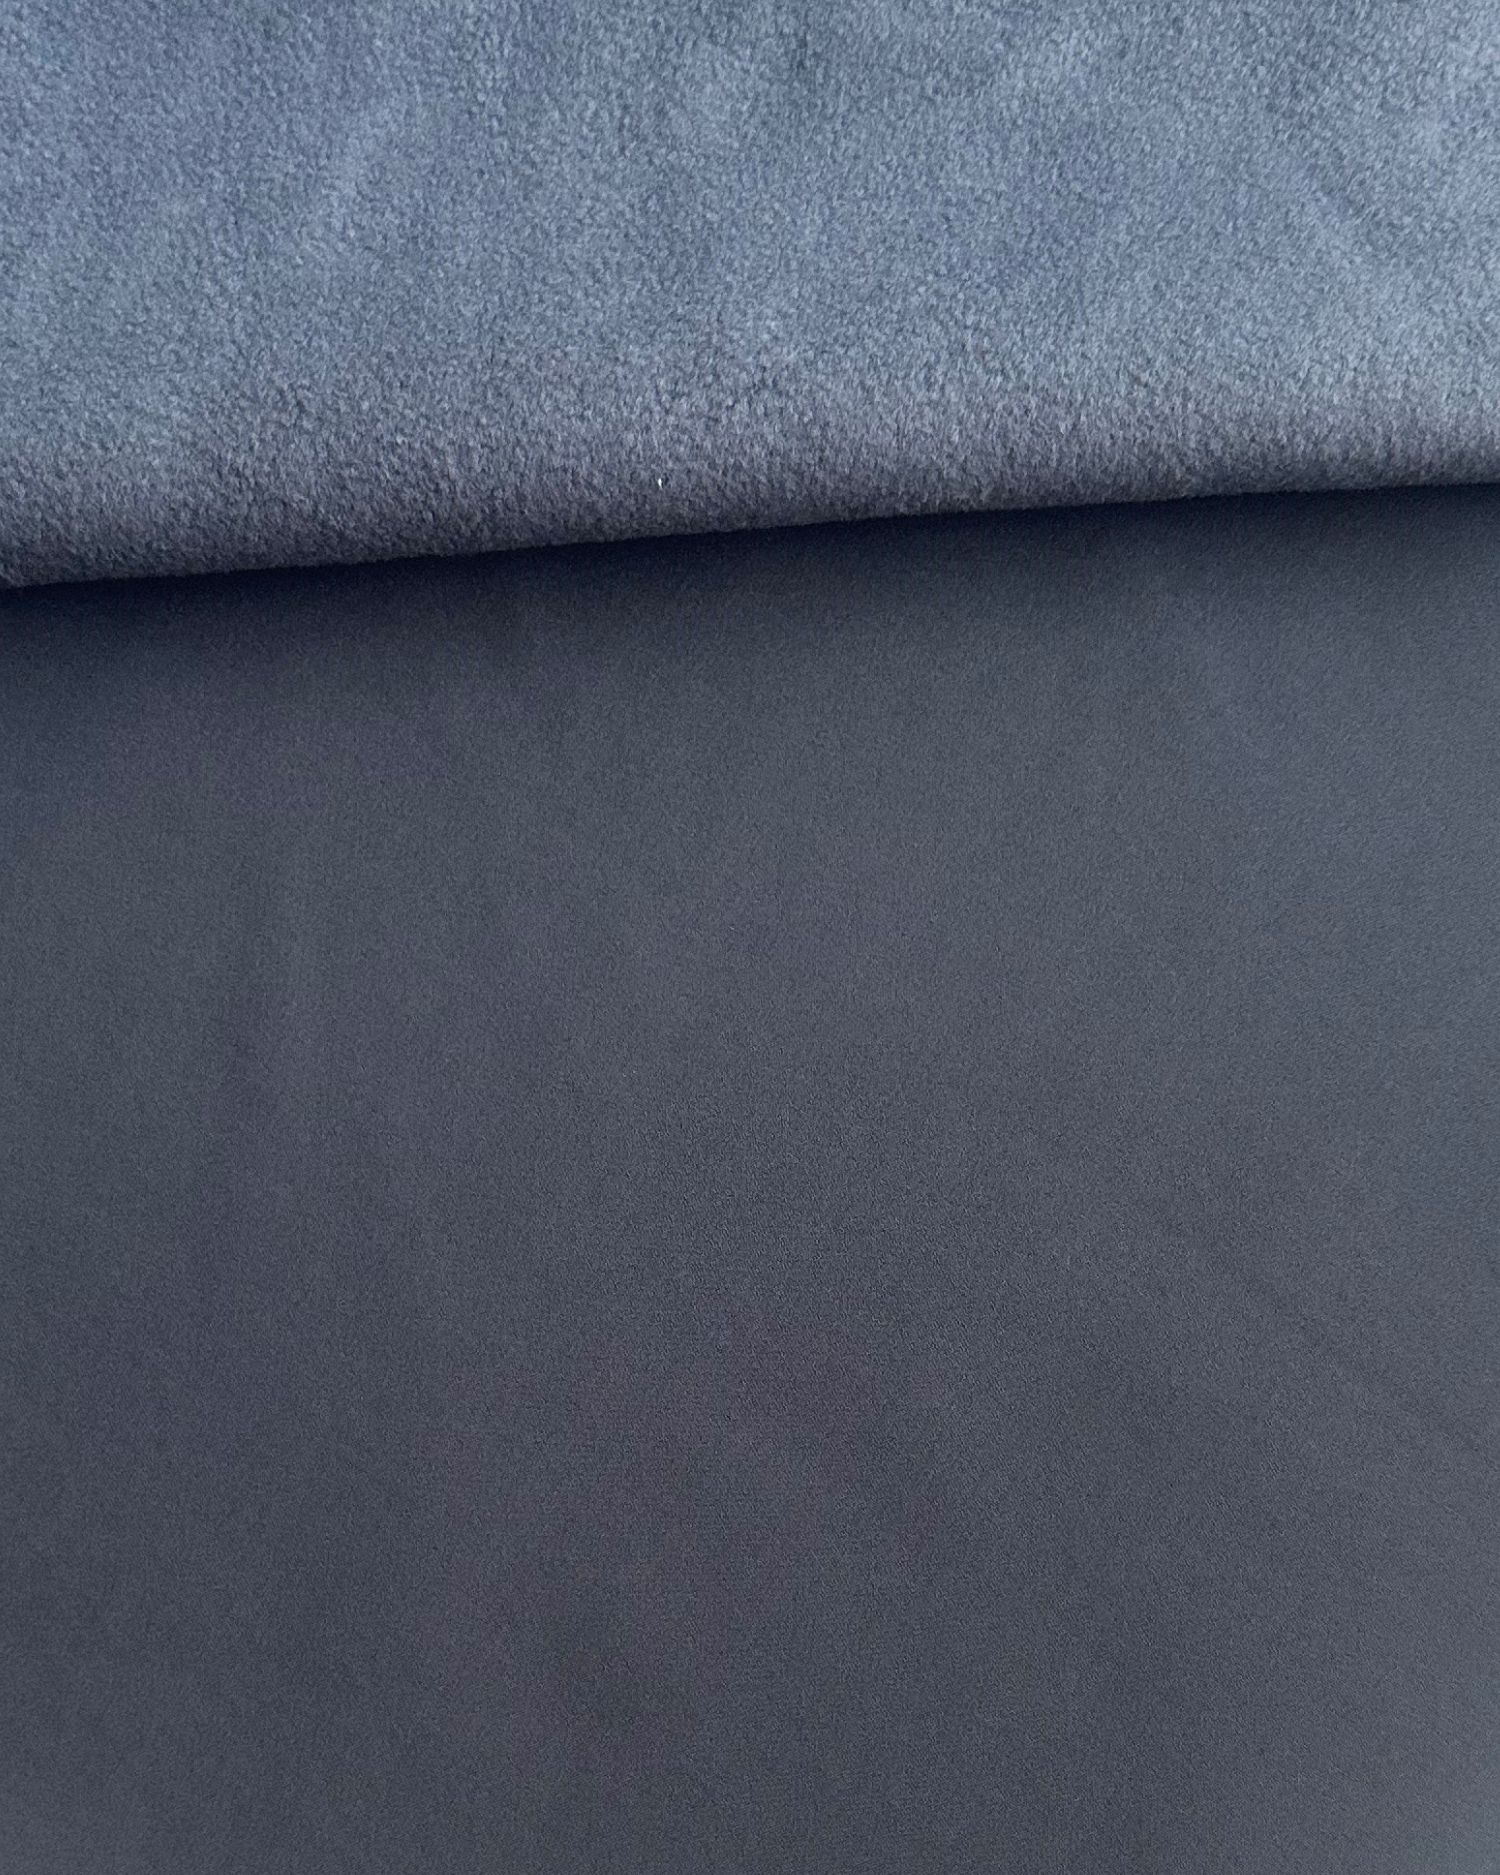 Winter softshell with fleece, 1 meter, dark grey